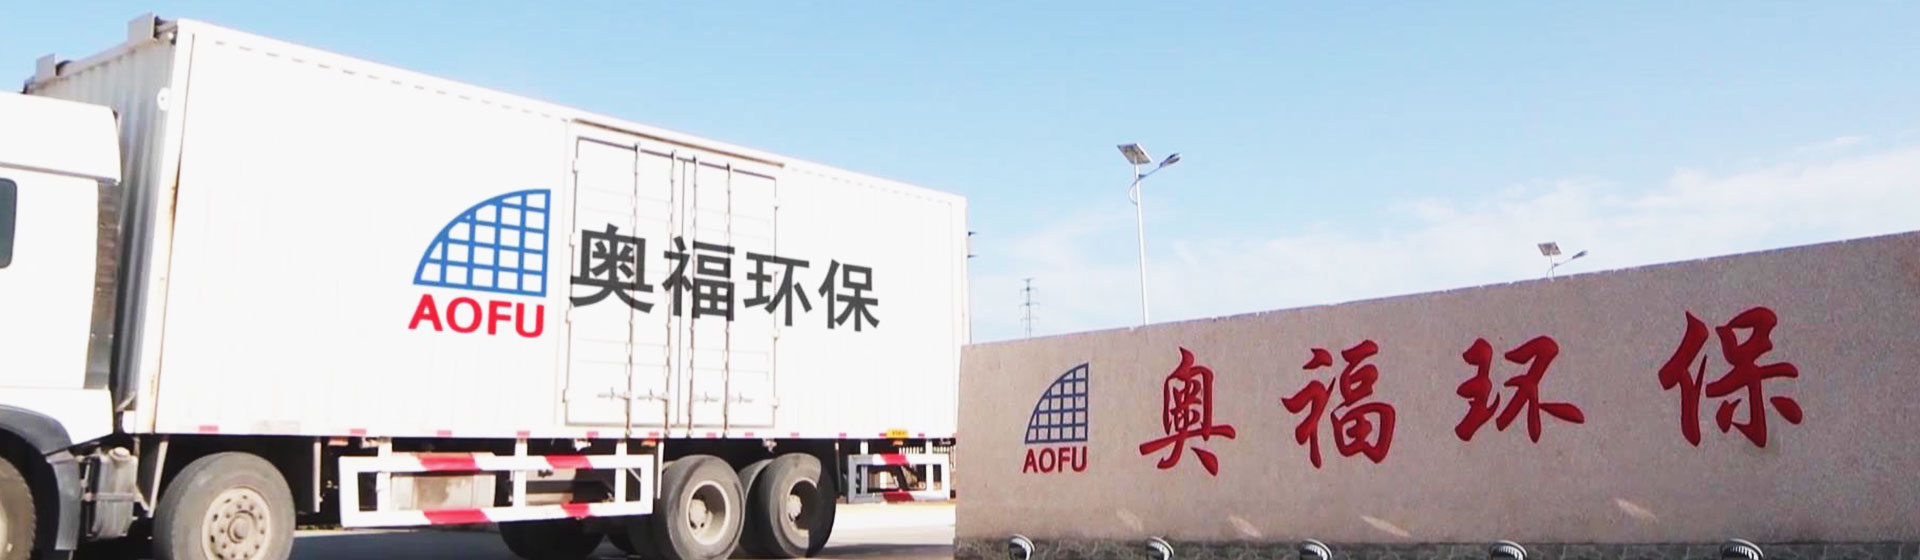 Shandong Aofu Environmental Technology Co., Ltd